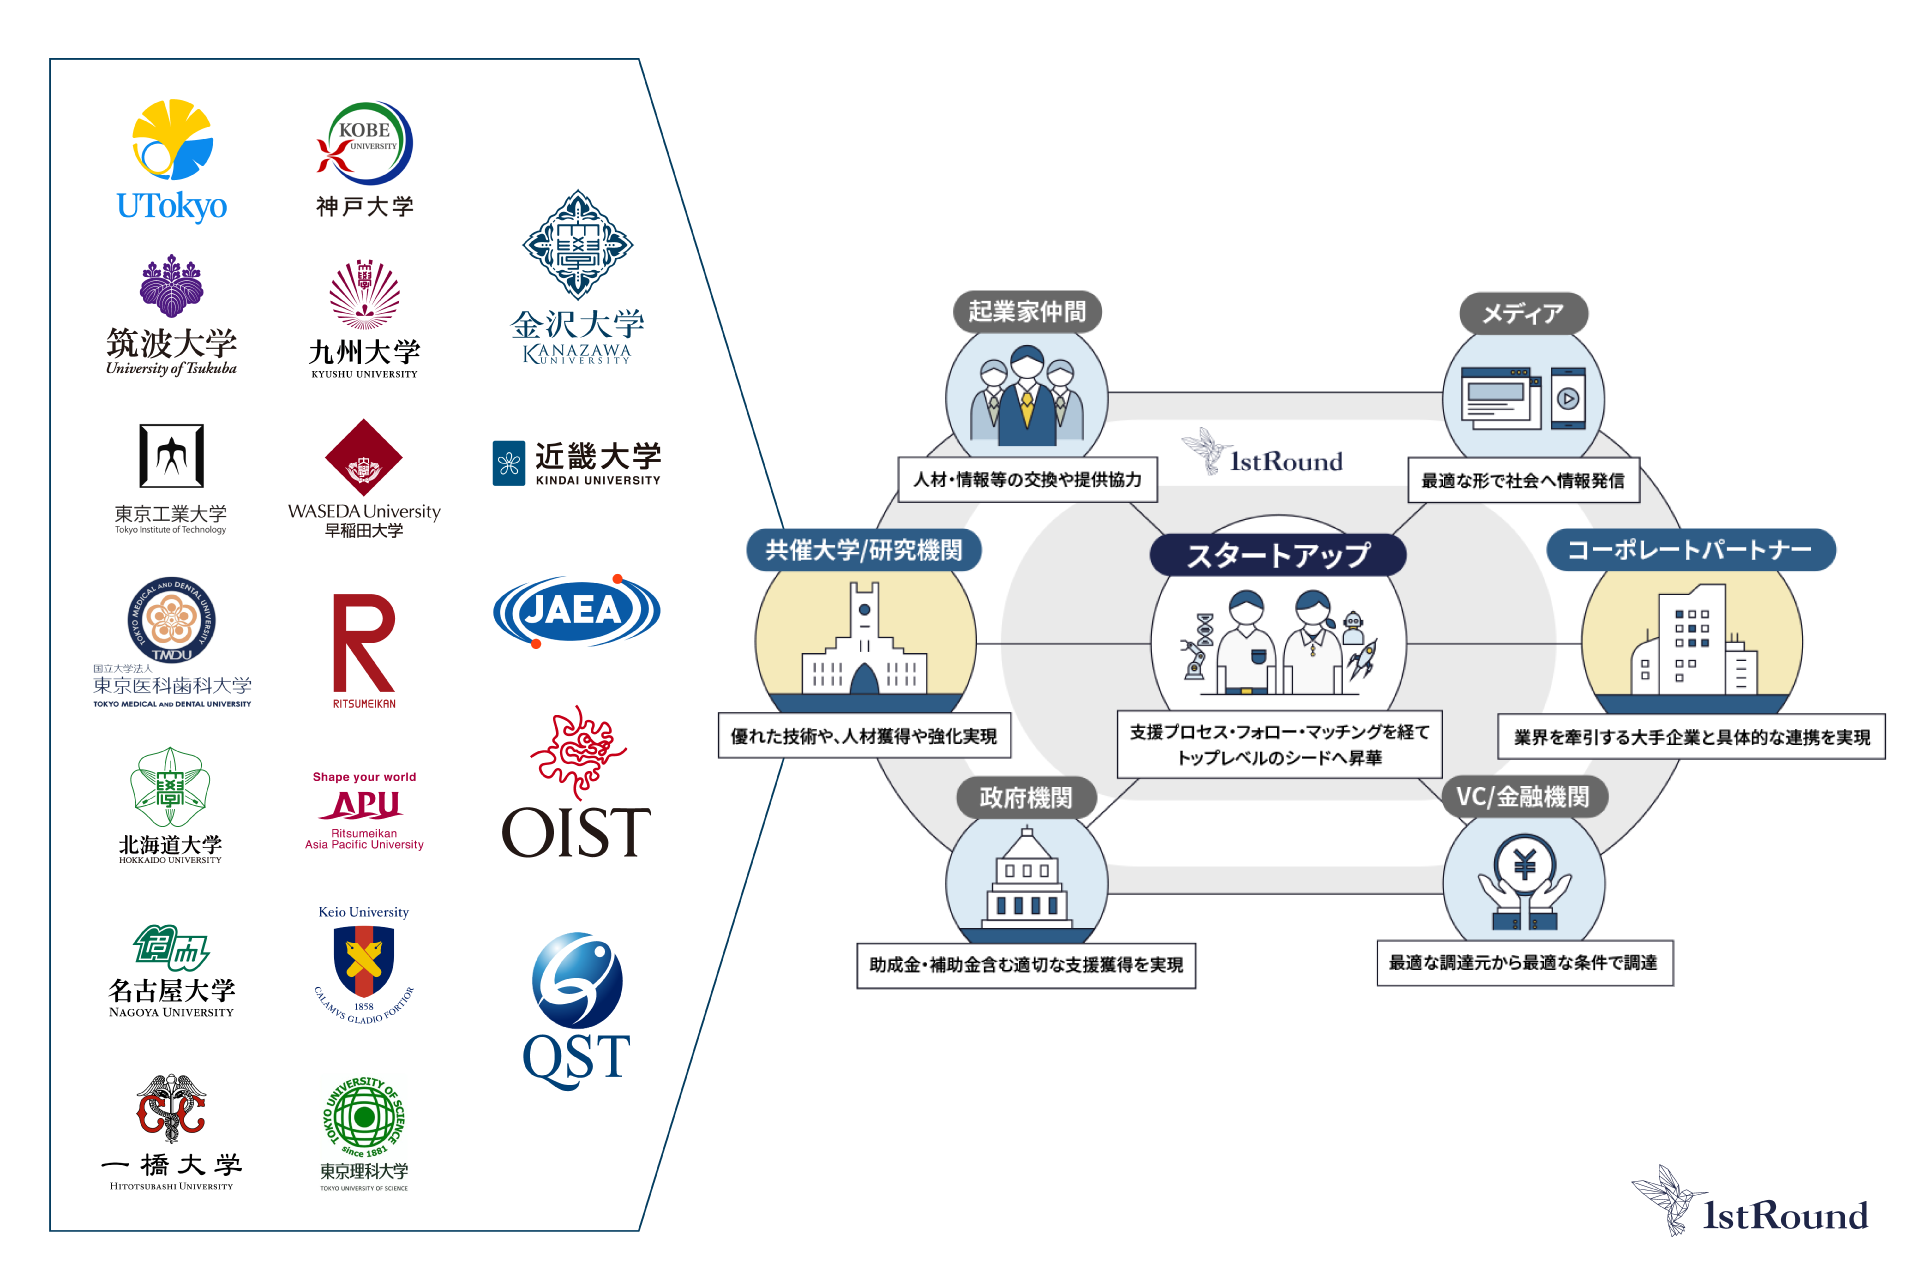 国内最大規模のアカデミア技術シーズ社会実装プログラム「1stRound」へ。共催17大学に加え国立研究機関も参画。　～沖縄科学技術大学院大学（OIST）、金沢大学、近畿大学、東京理科大学に加え、日本原子力研究開発機構（JAEA）、量子科学技術研究開発機構（QST）が参画～